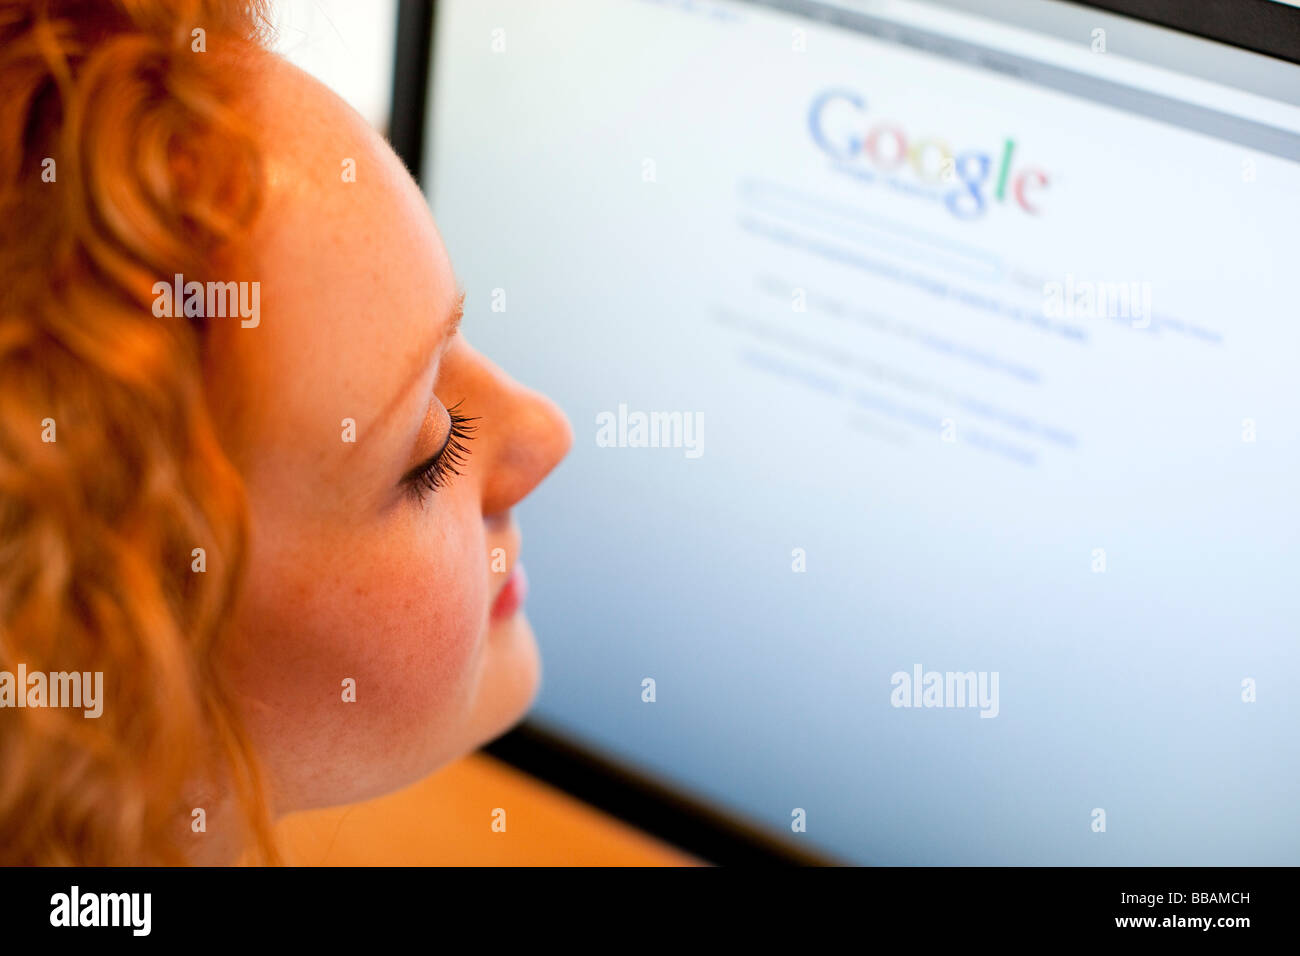 Girl using 'Google' online Stock Photo